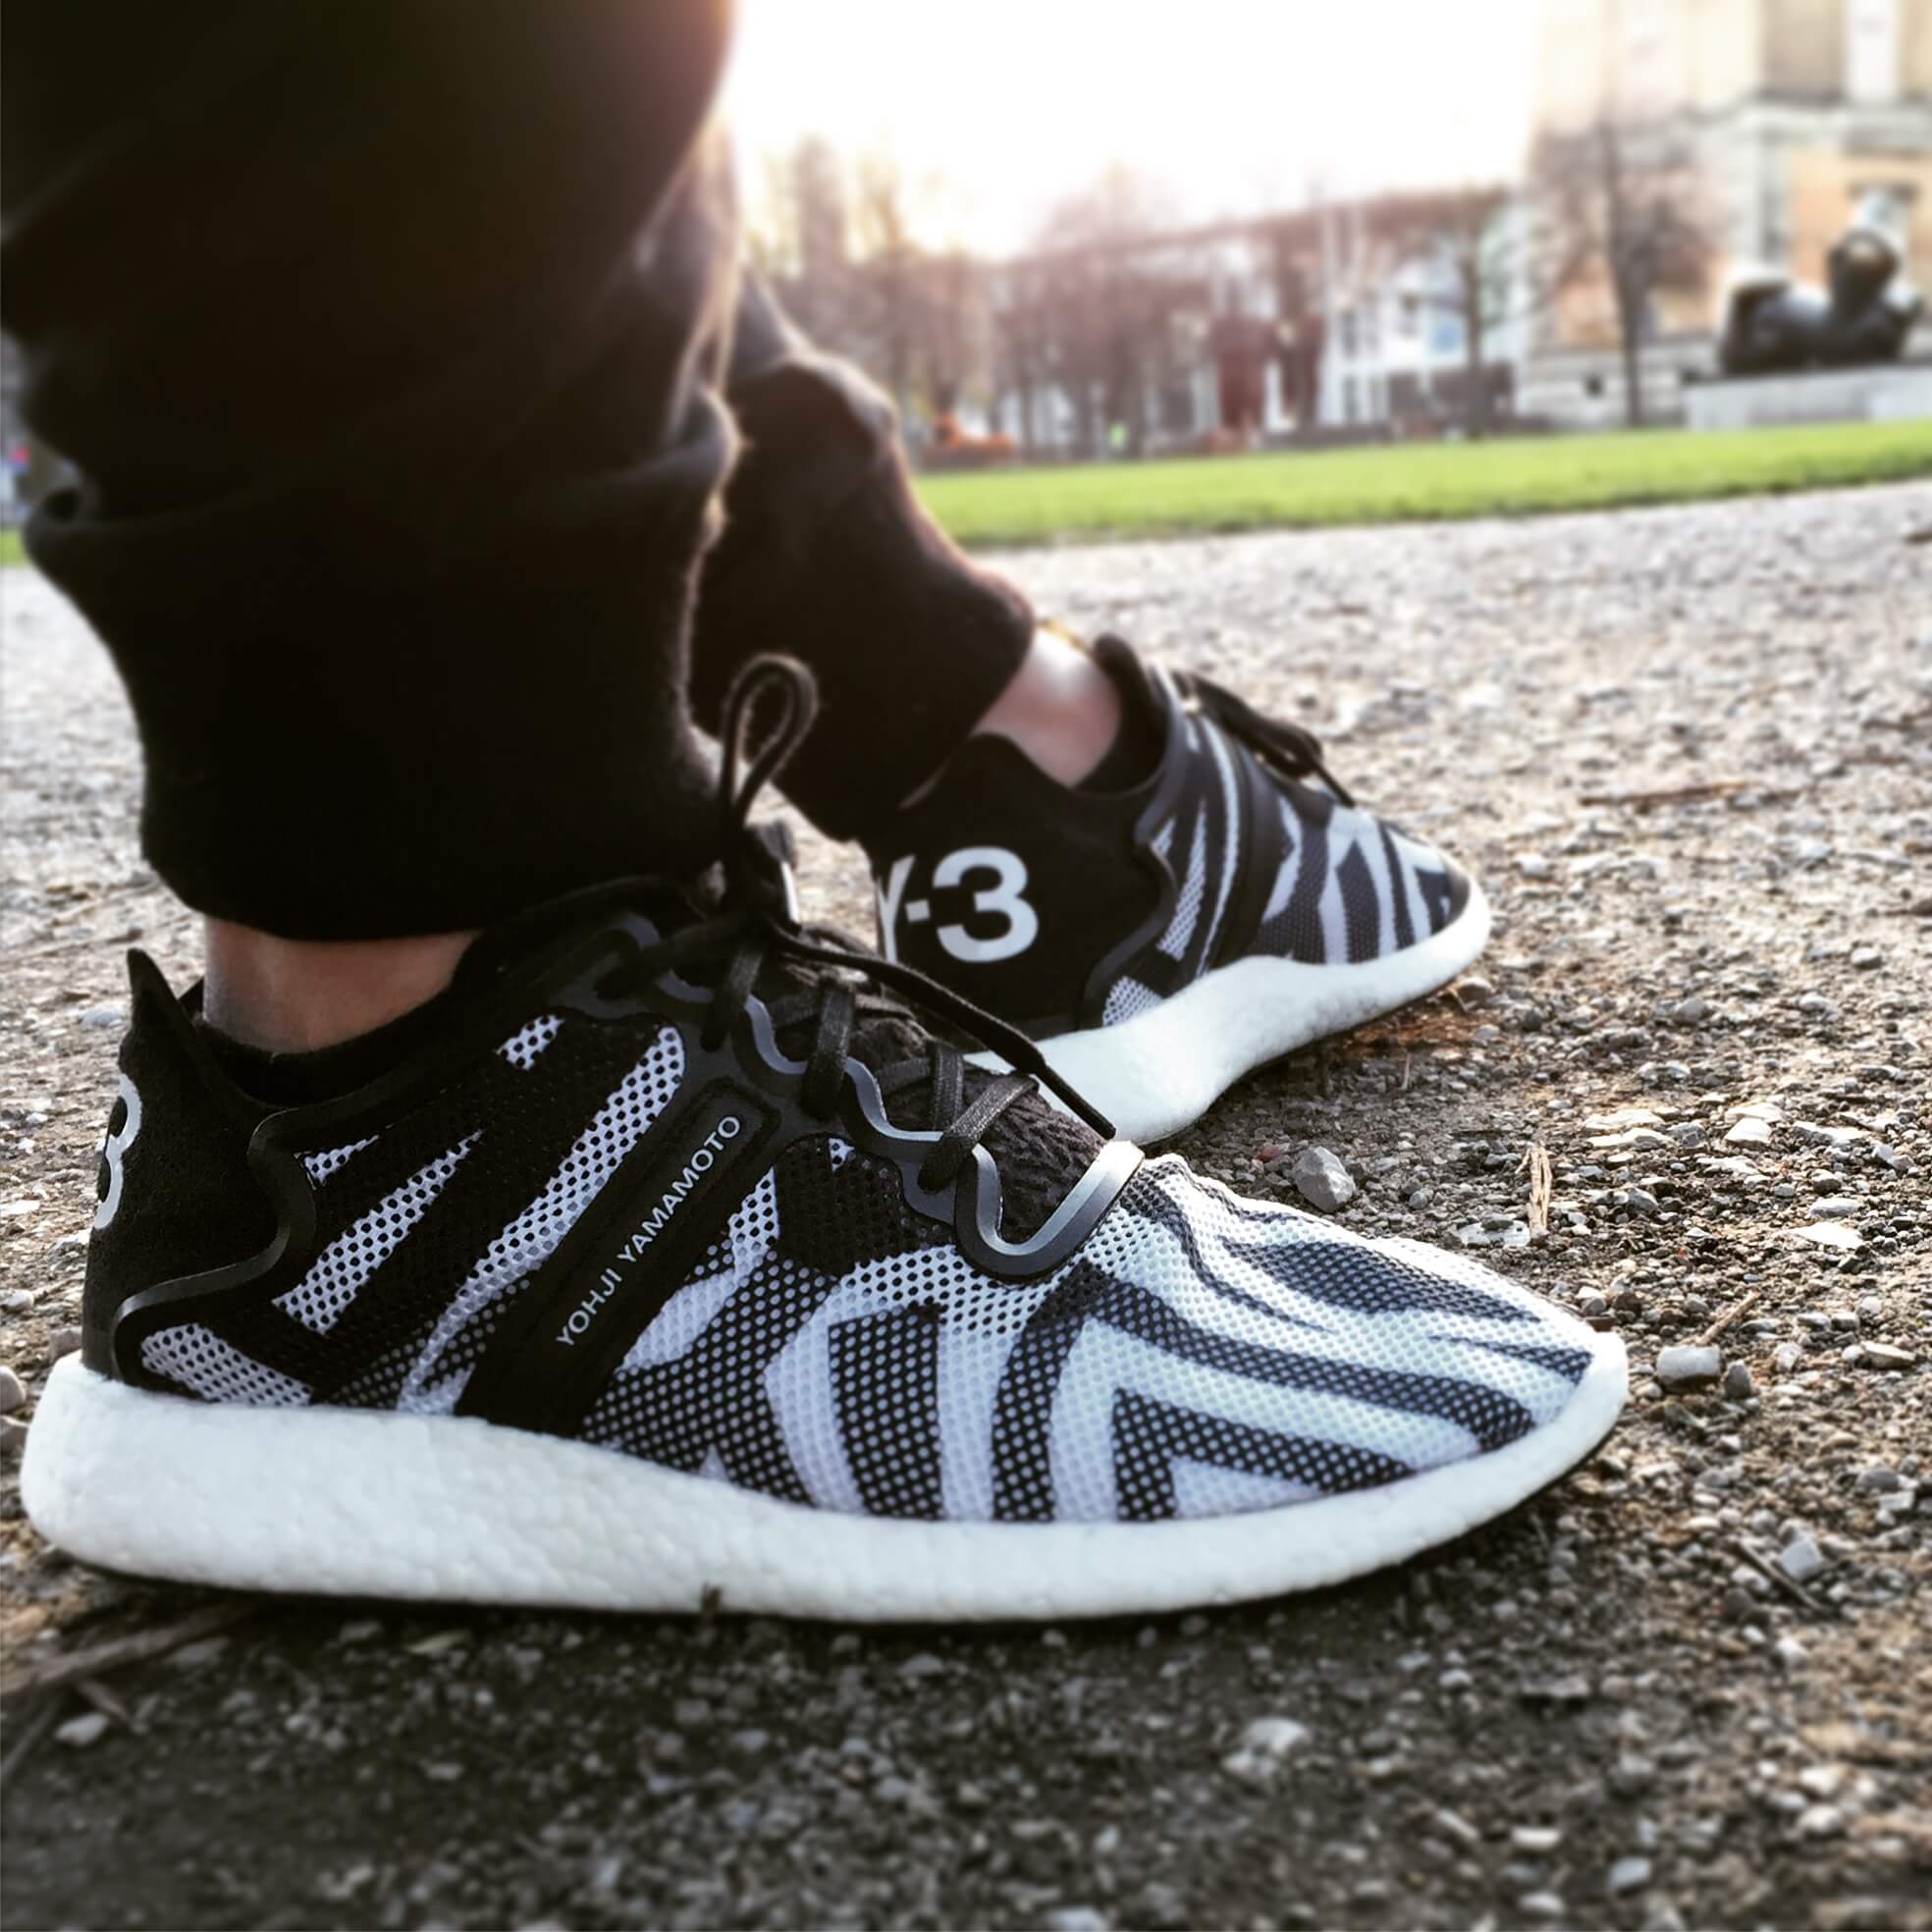 adidas y3 zebra